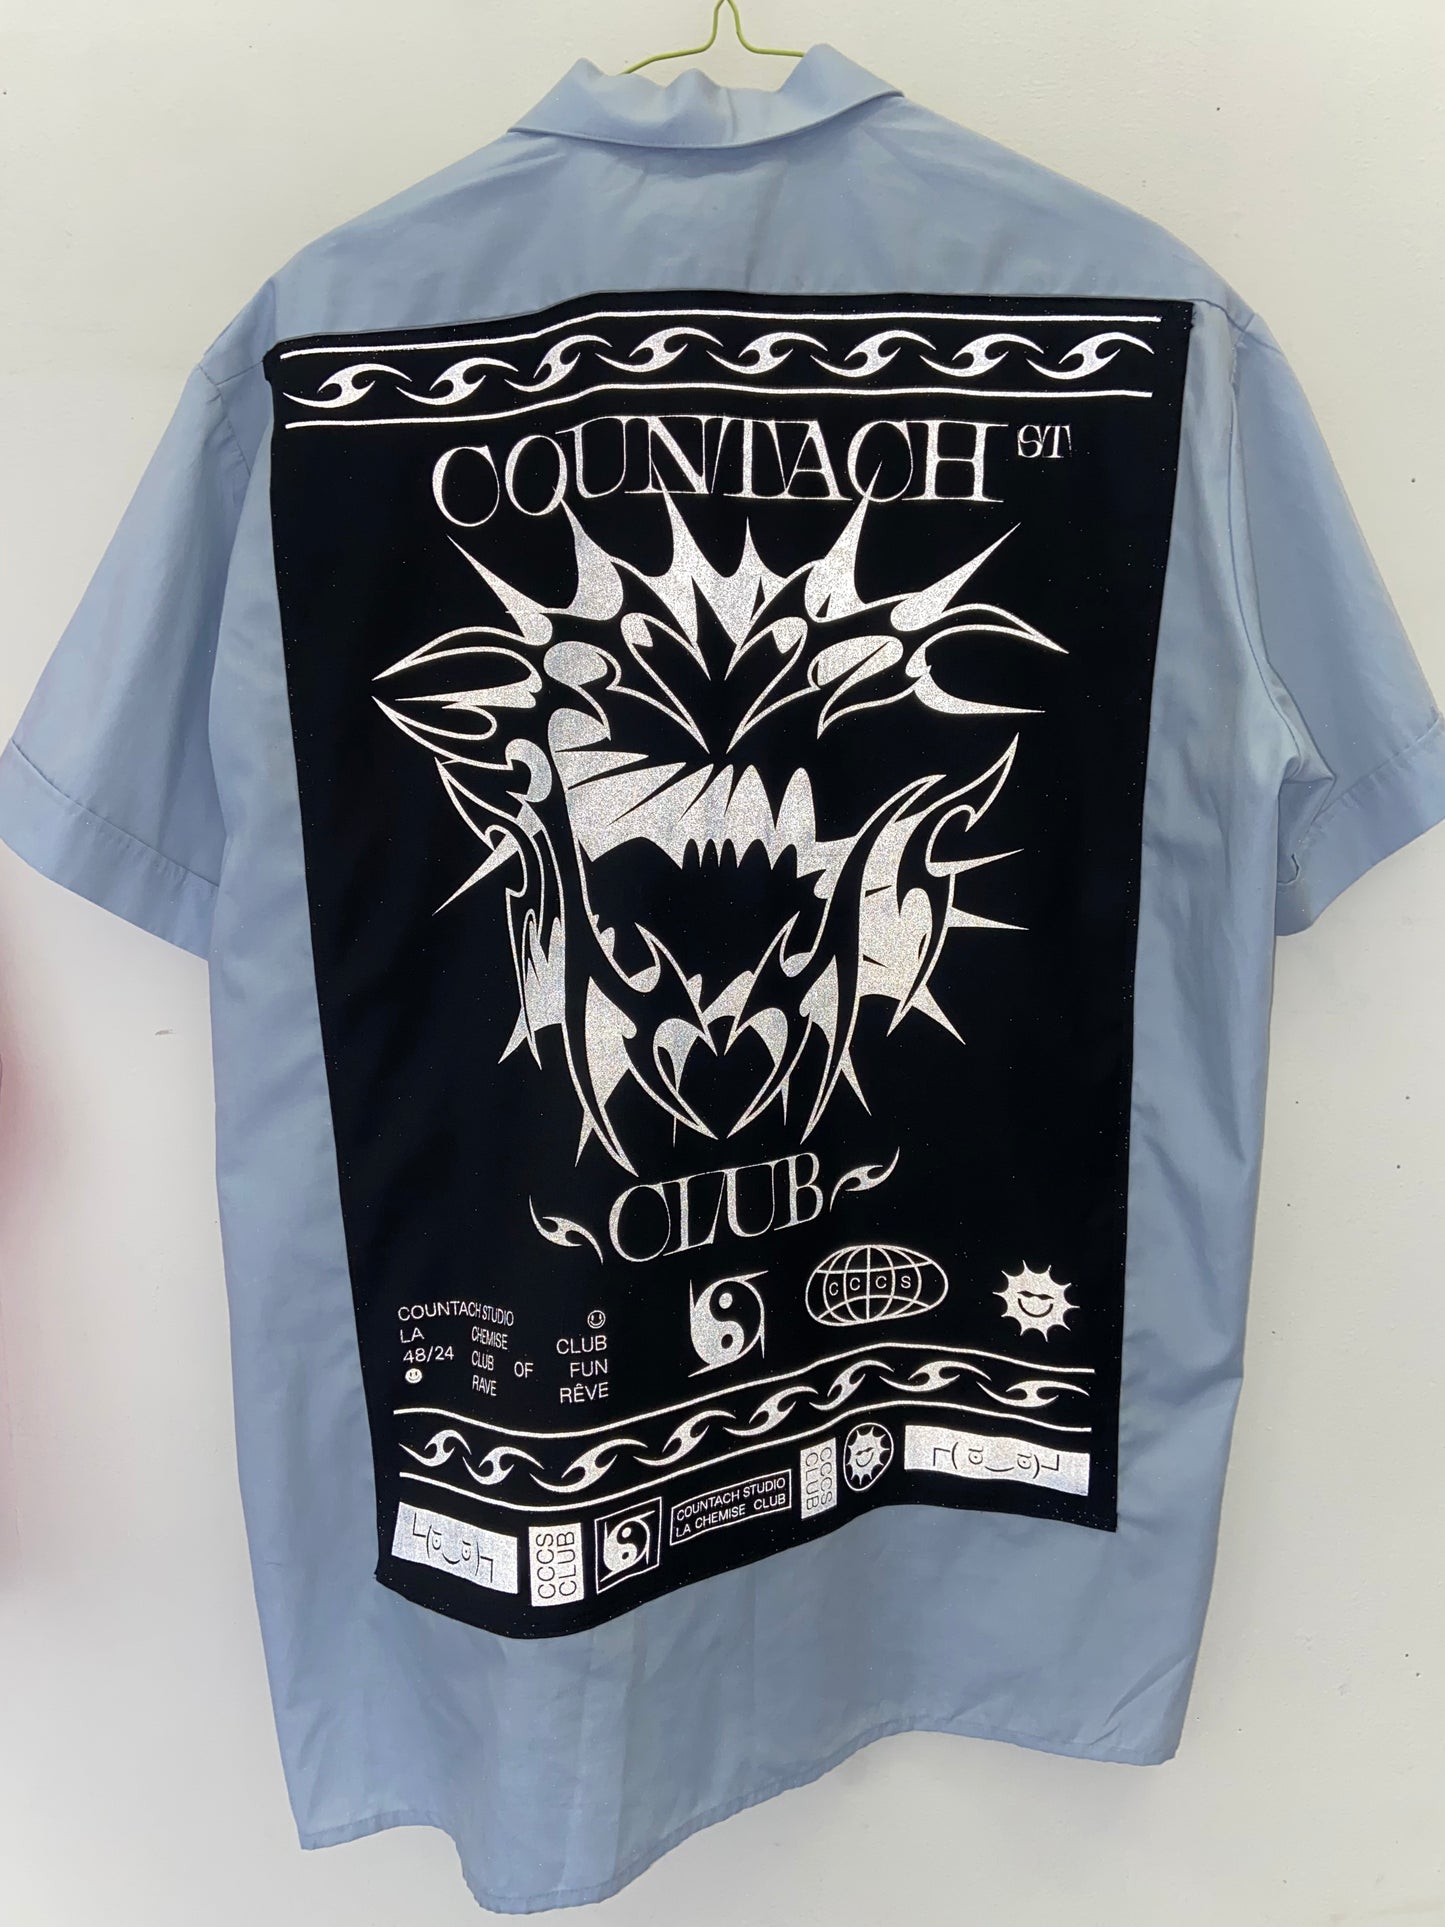 Countach Club Shirt 8/18